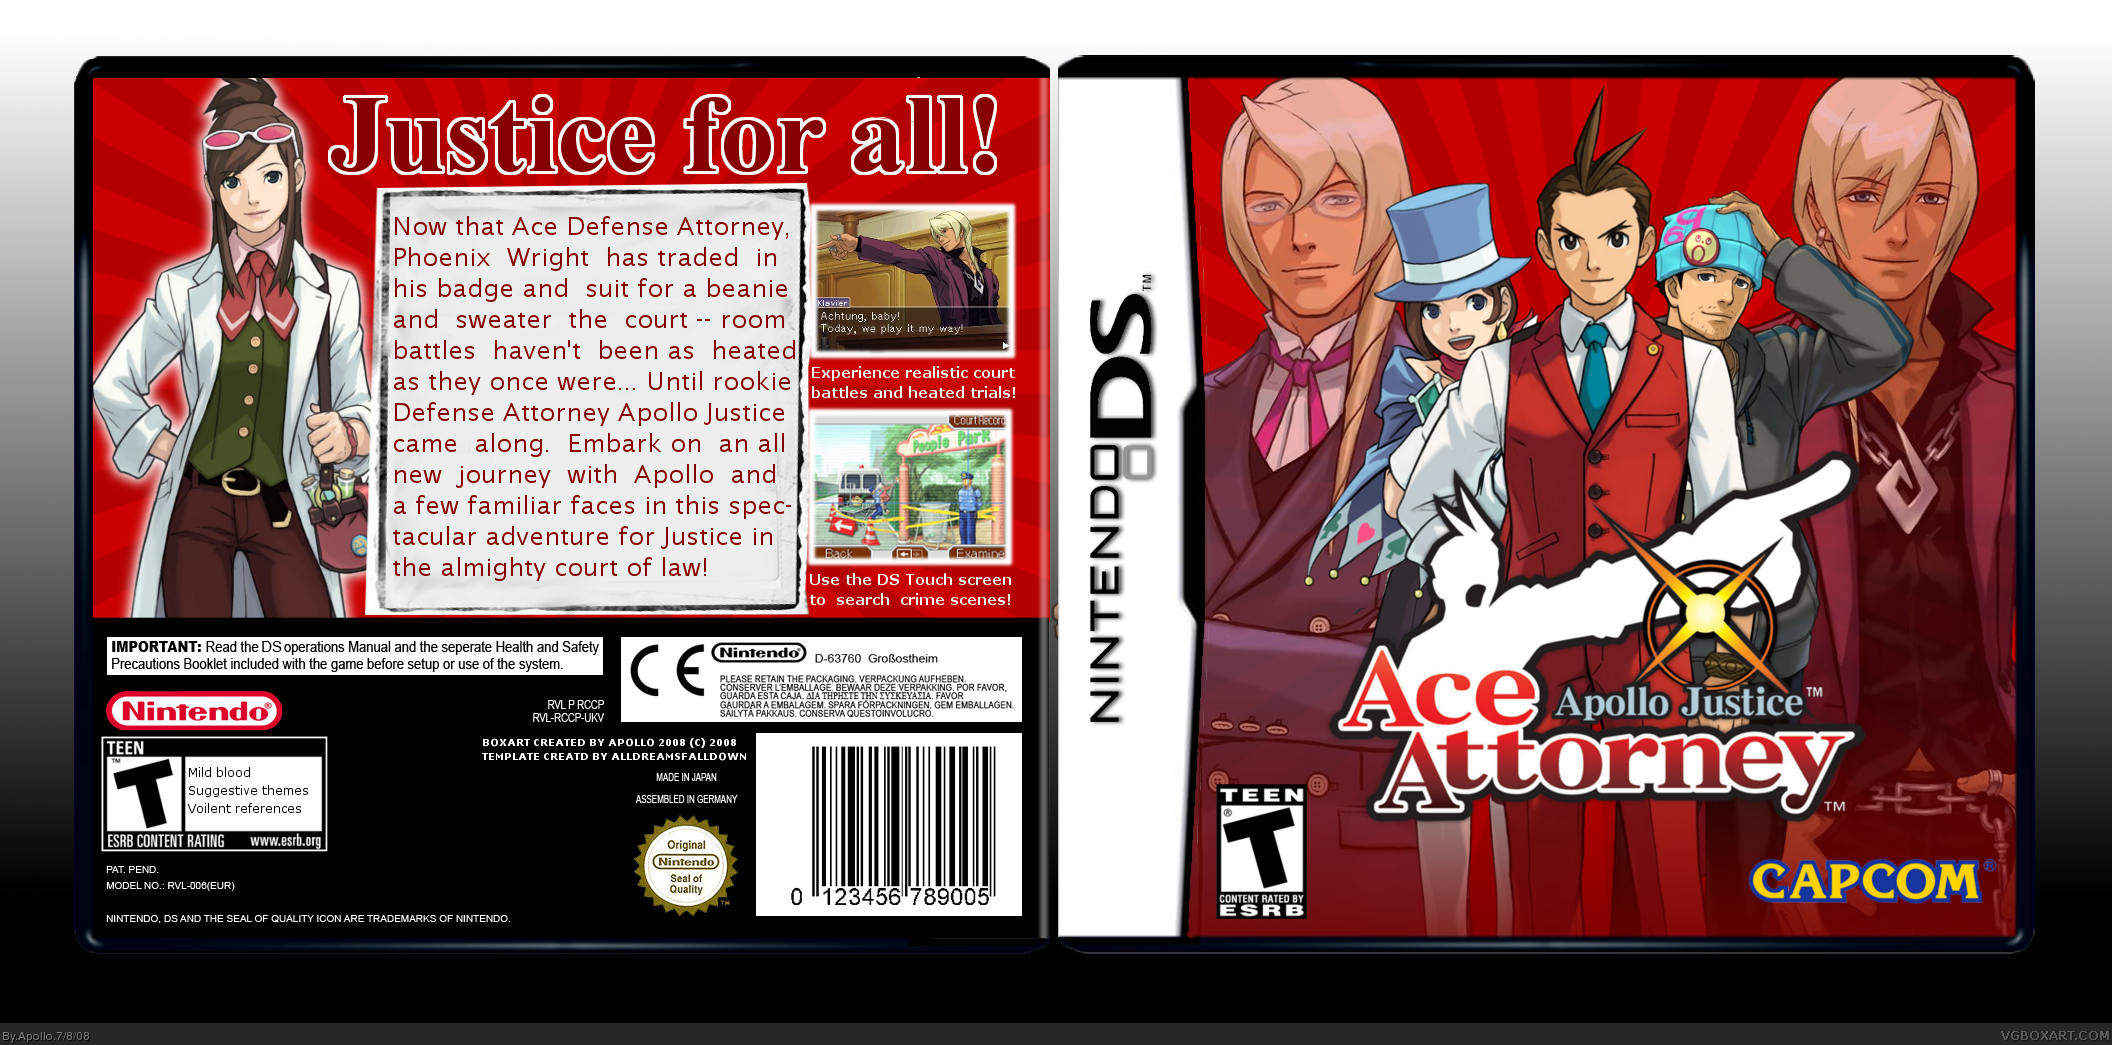 Apollo Justice : Ace Attorney box cover